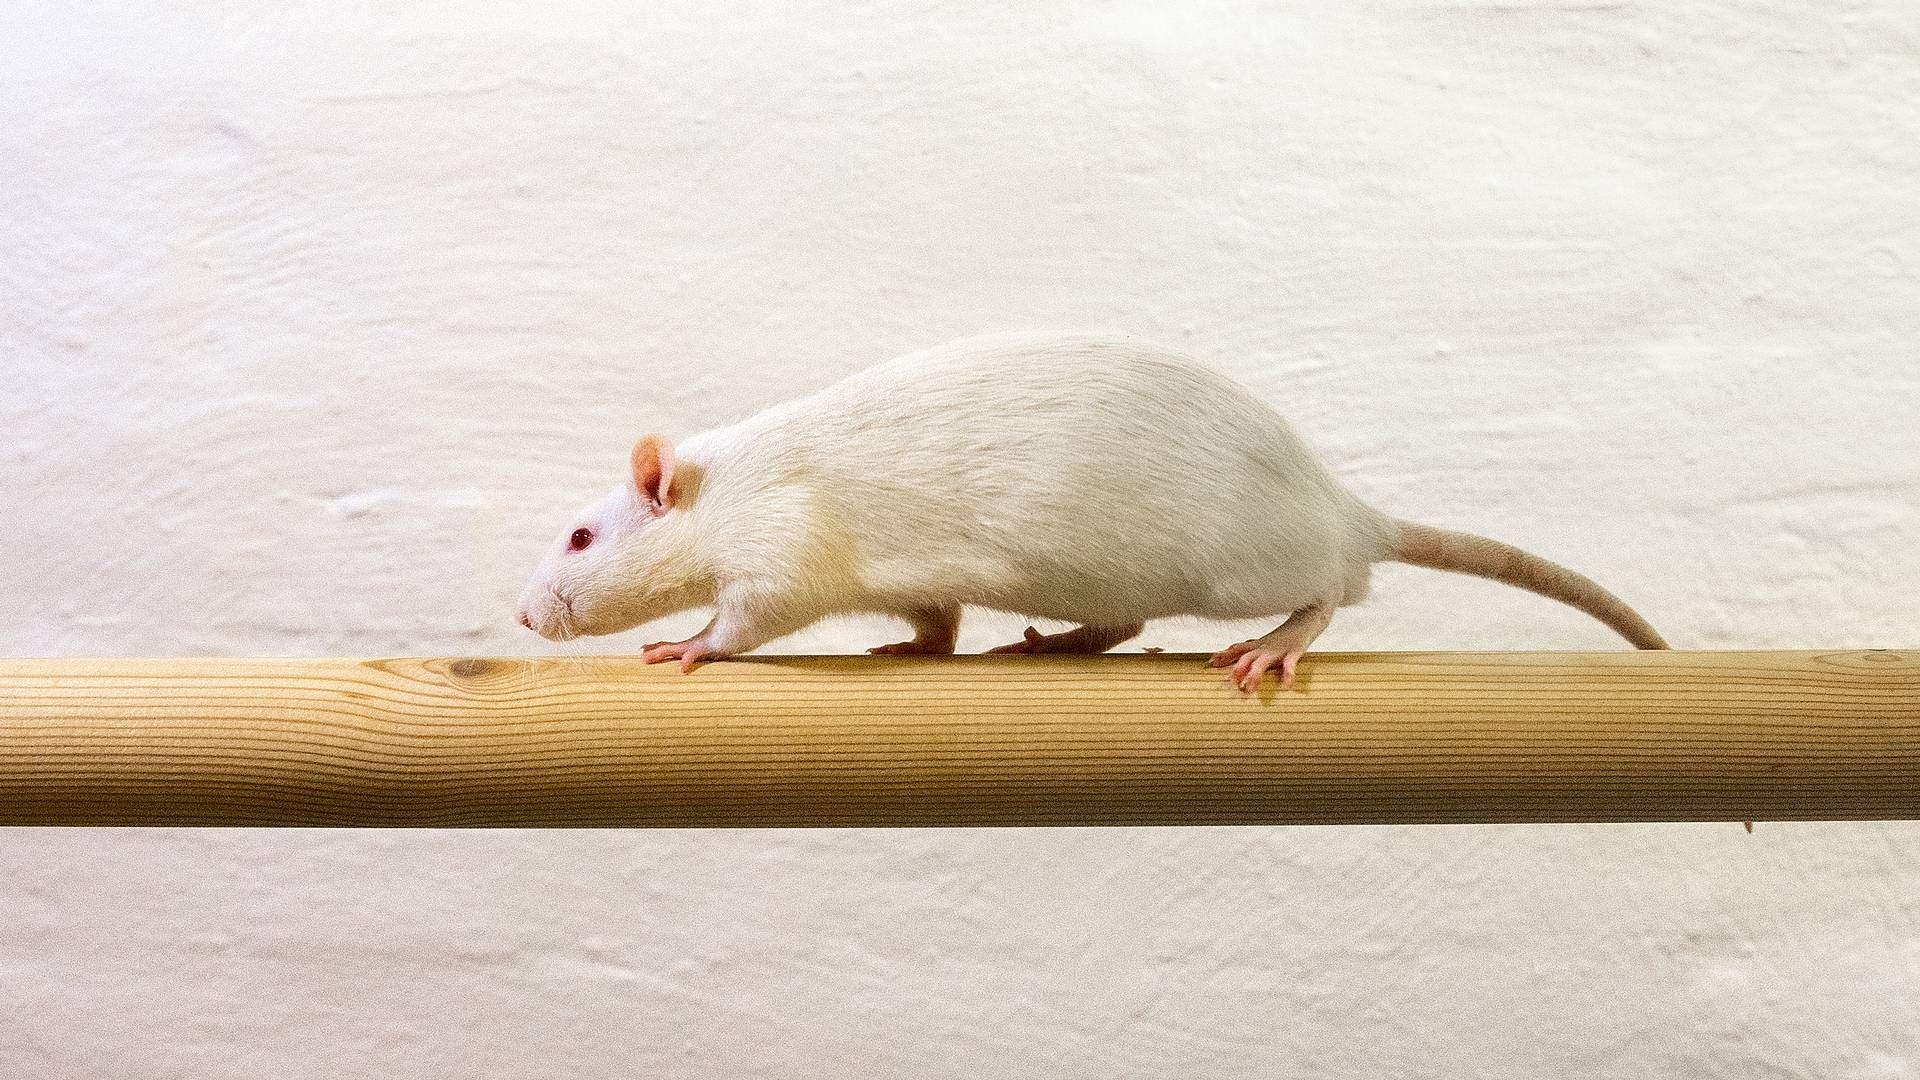 Ved at få rotter til at dyrke sikker sex, vil Triptobio overfløddiggøre rottegift. | Foto: Finn Frandsen